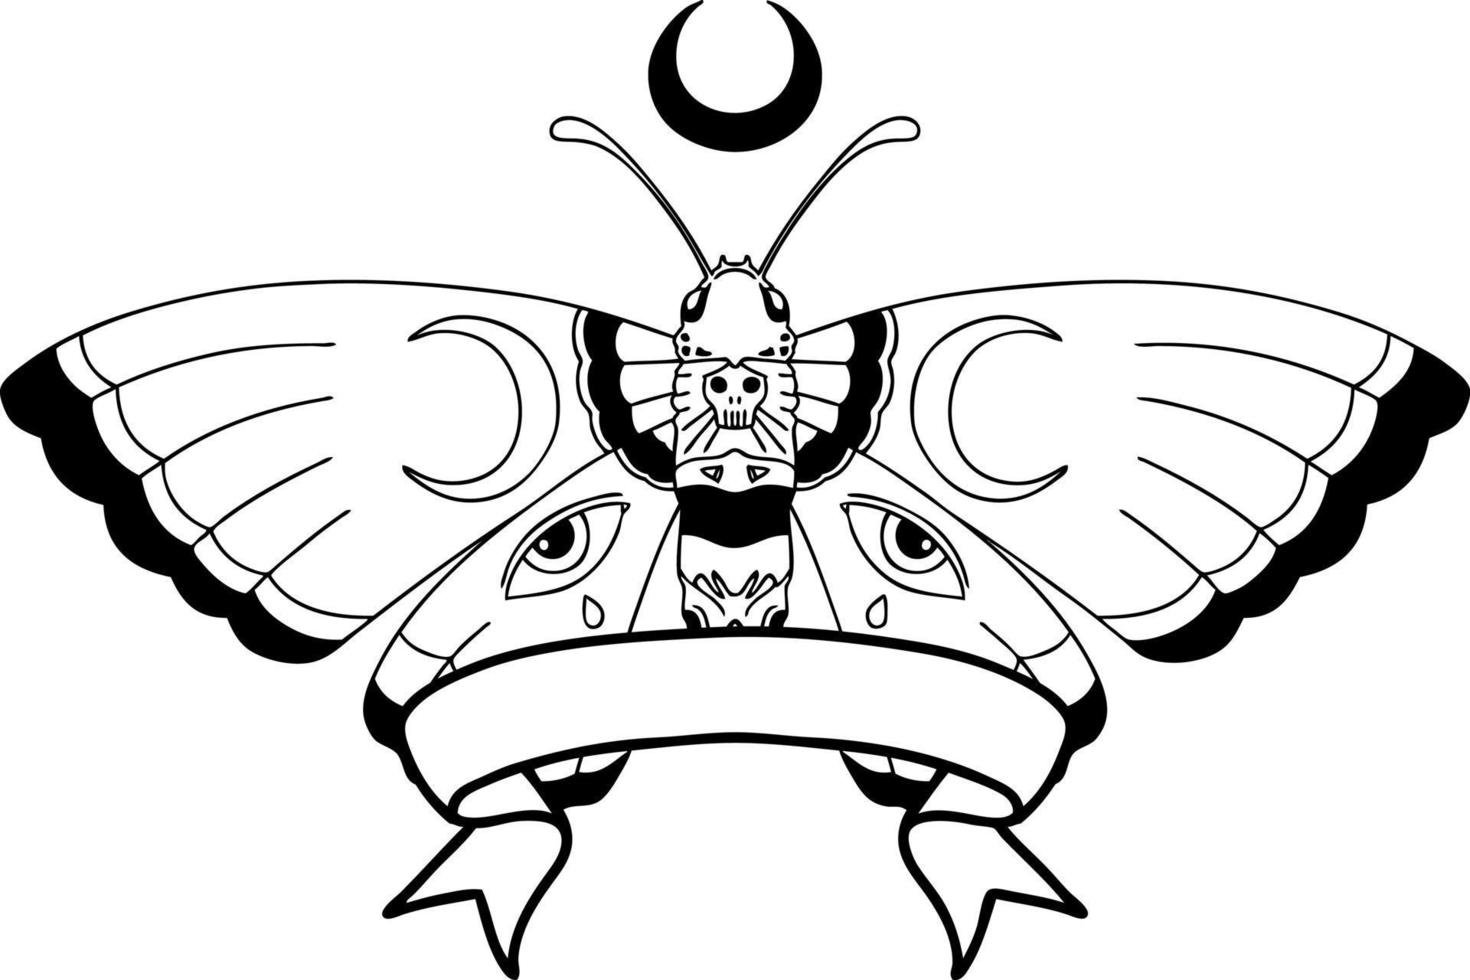 traditionell svart linjearbete tatuering med baner av en fjäril vektor